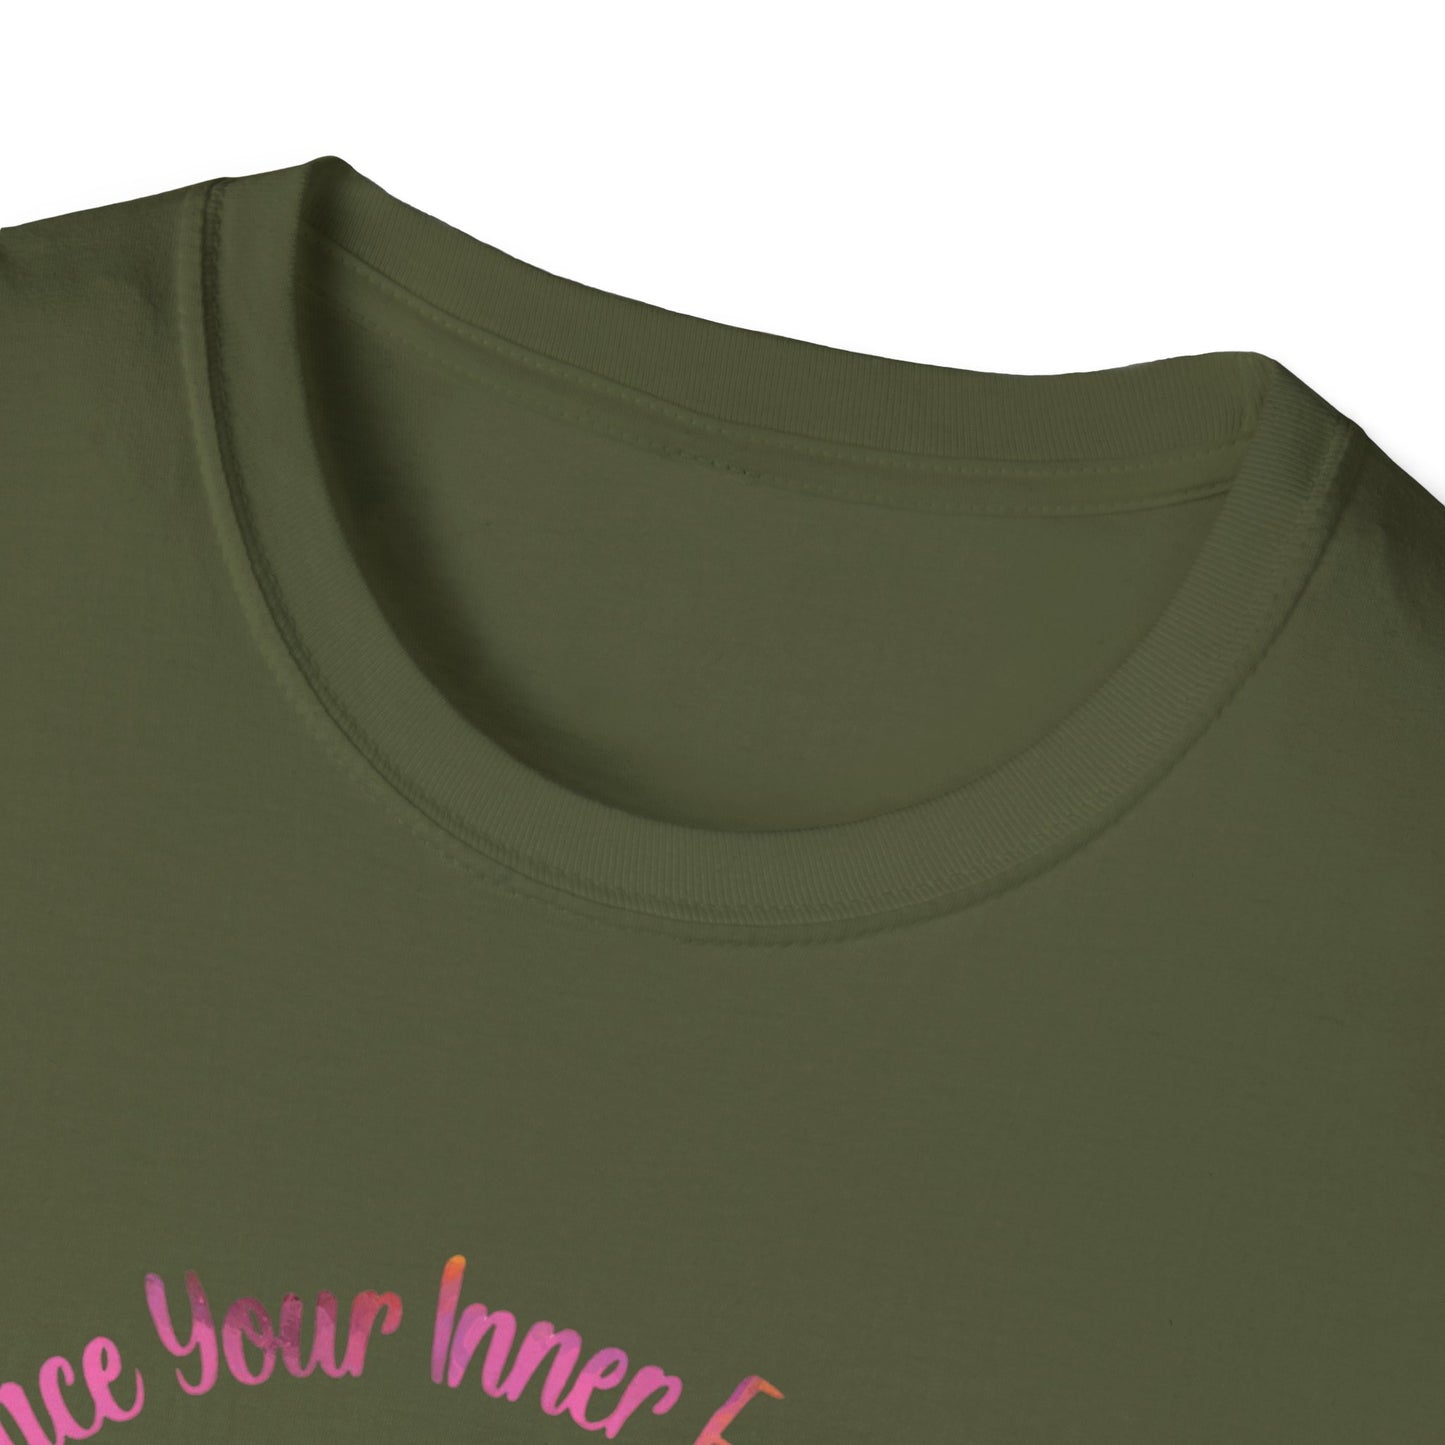 Unisex Softstyle T-Shirt Embrace your inner feline spirit